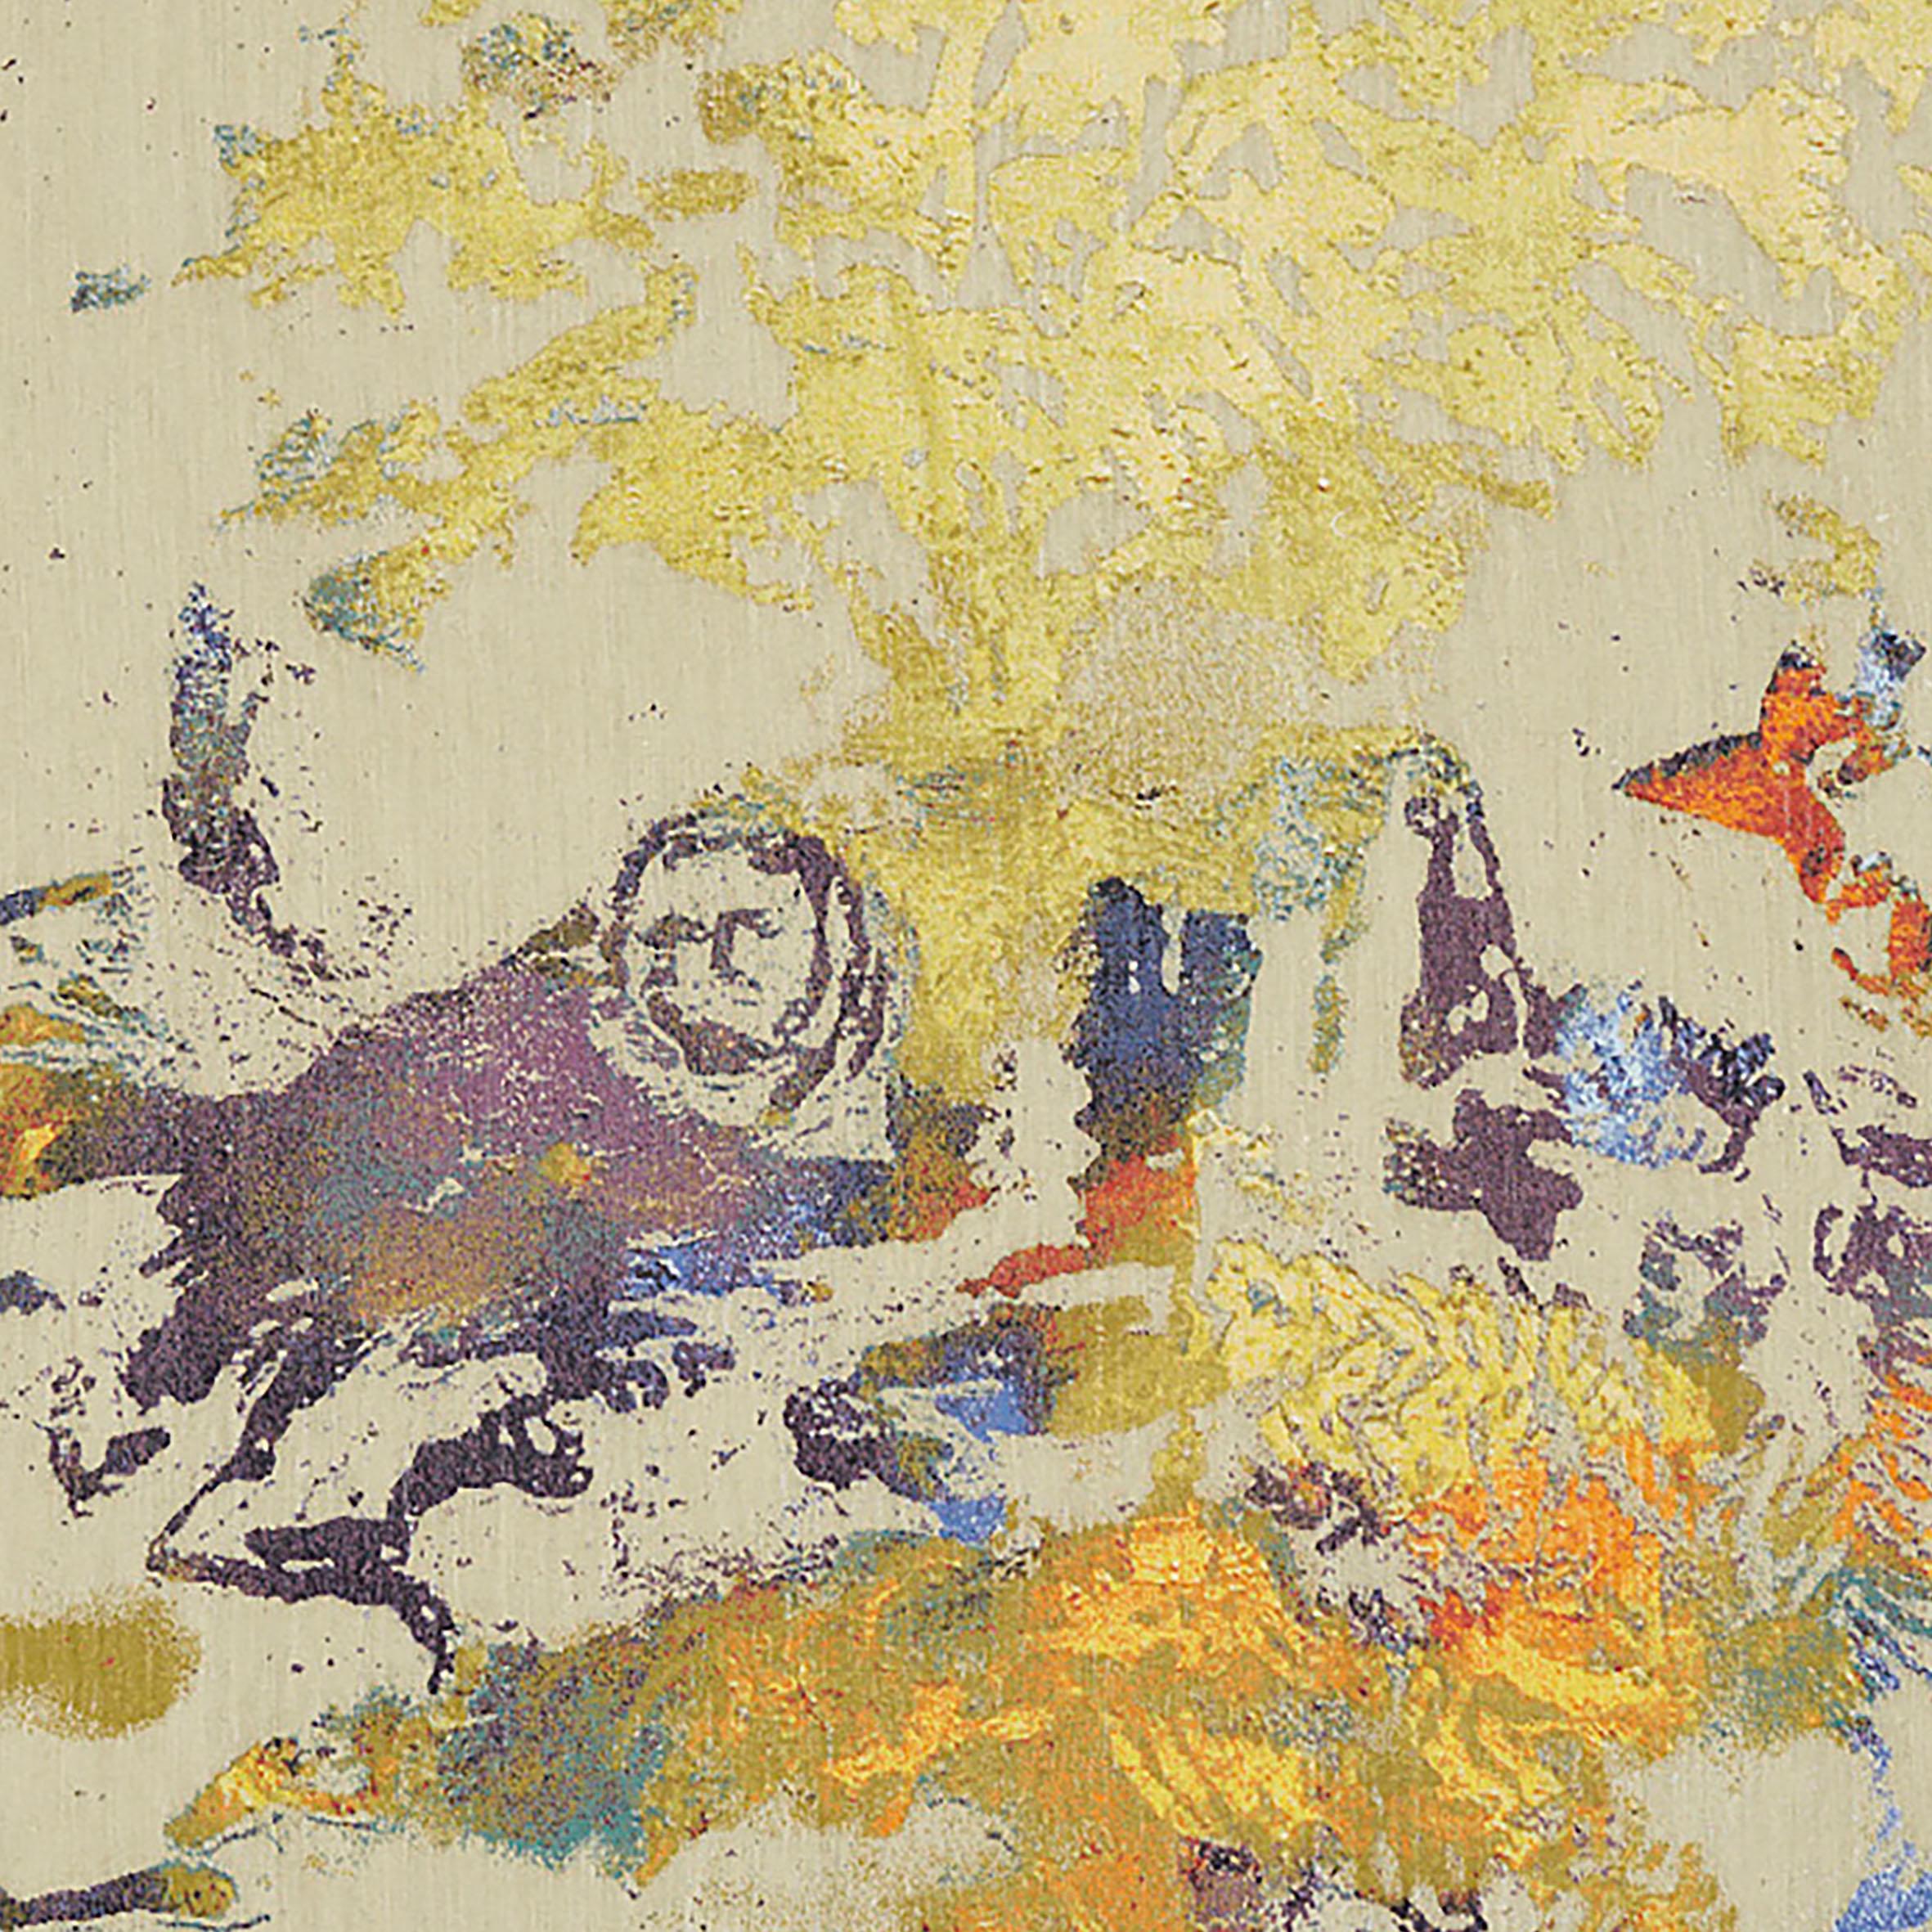 Maïlys Seydoux-Dumas, Vendémiaire, Wandteppich aus Wolle, Néolice, 2023

Ein aus Wolle gewebter Wandteppich, der einen goldenen Baum und rote, blaue und braune Objekte darstellt  auf beigem Hintergrund.
Signiert unten rechts.
Nummeriert 1/8 von